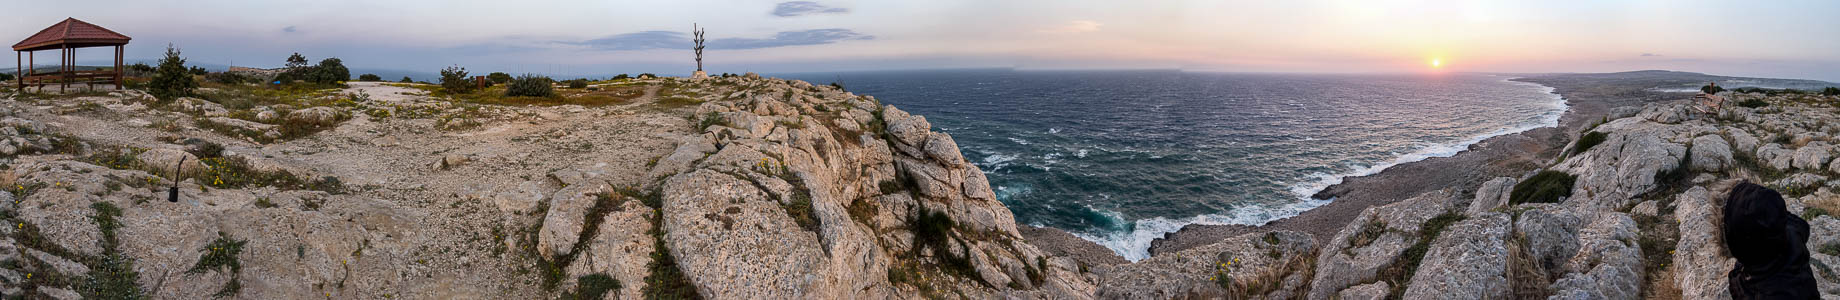 Mittelmeerküste Kap Greco